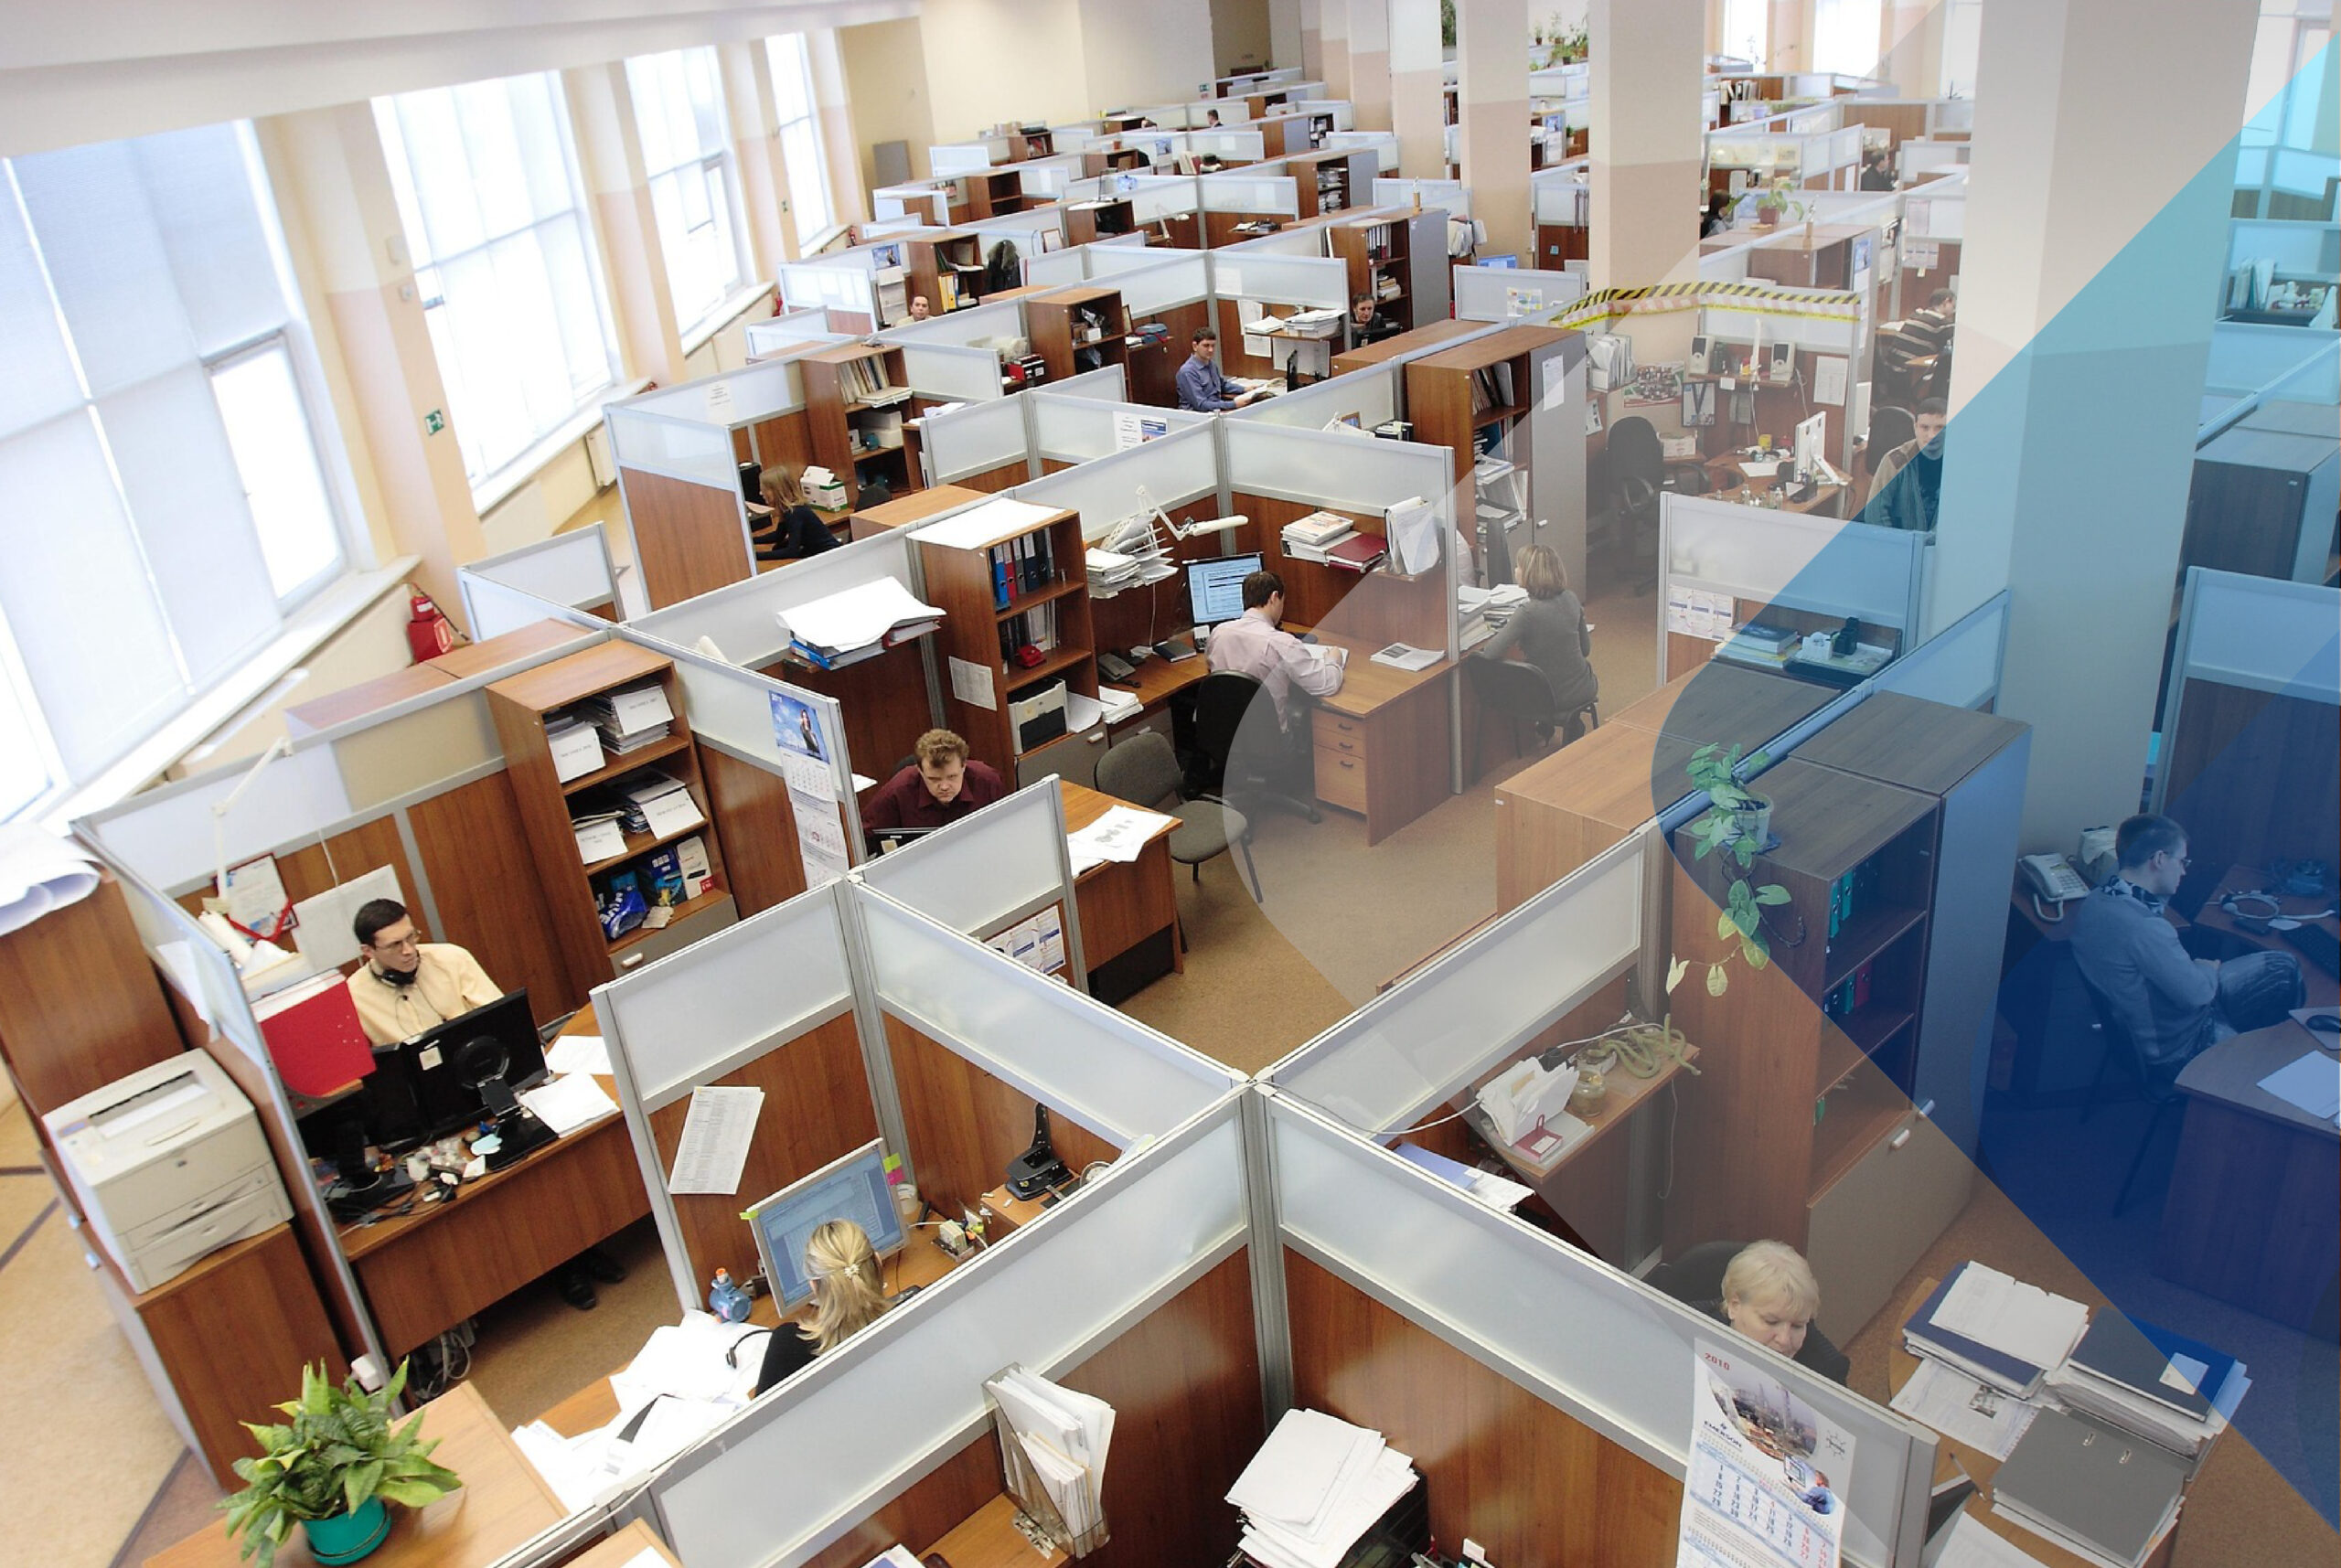 Imagem de stock de um escritório para acompanhar o artigo sobre estratégias de retenção de empregados